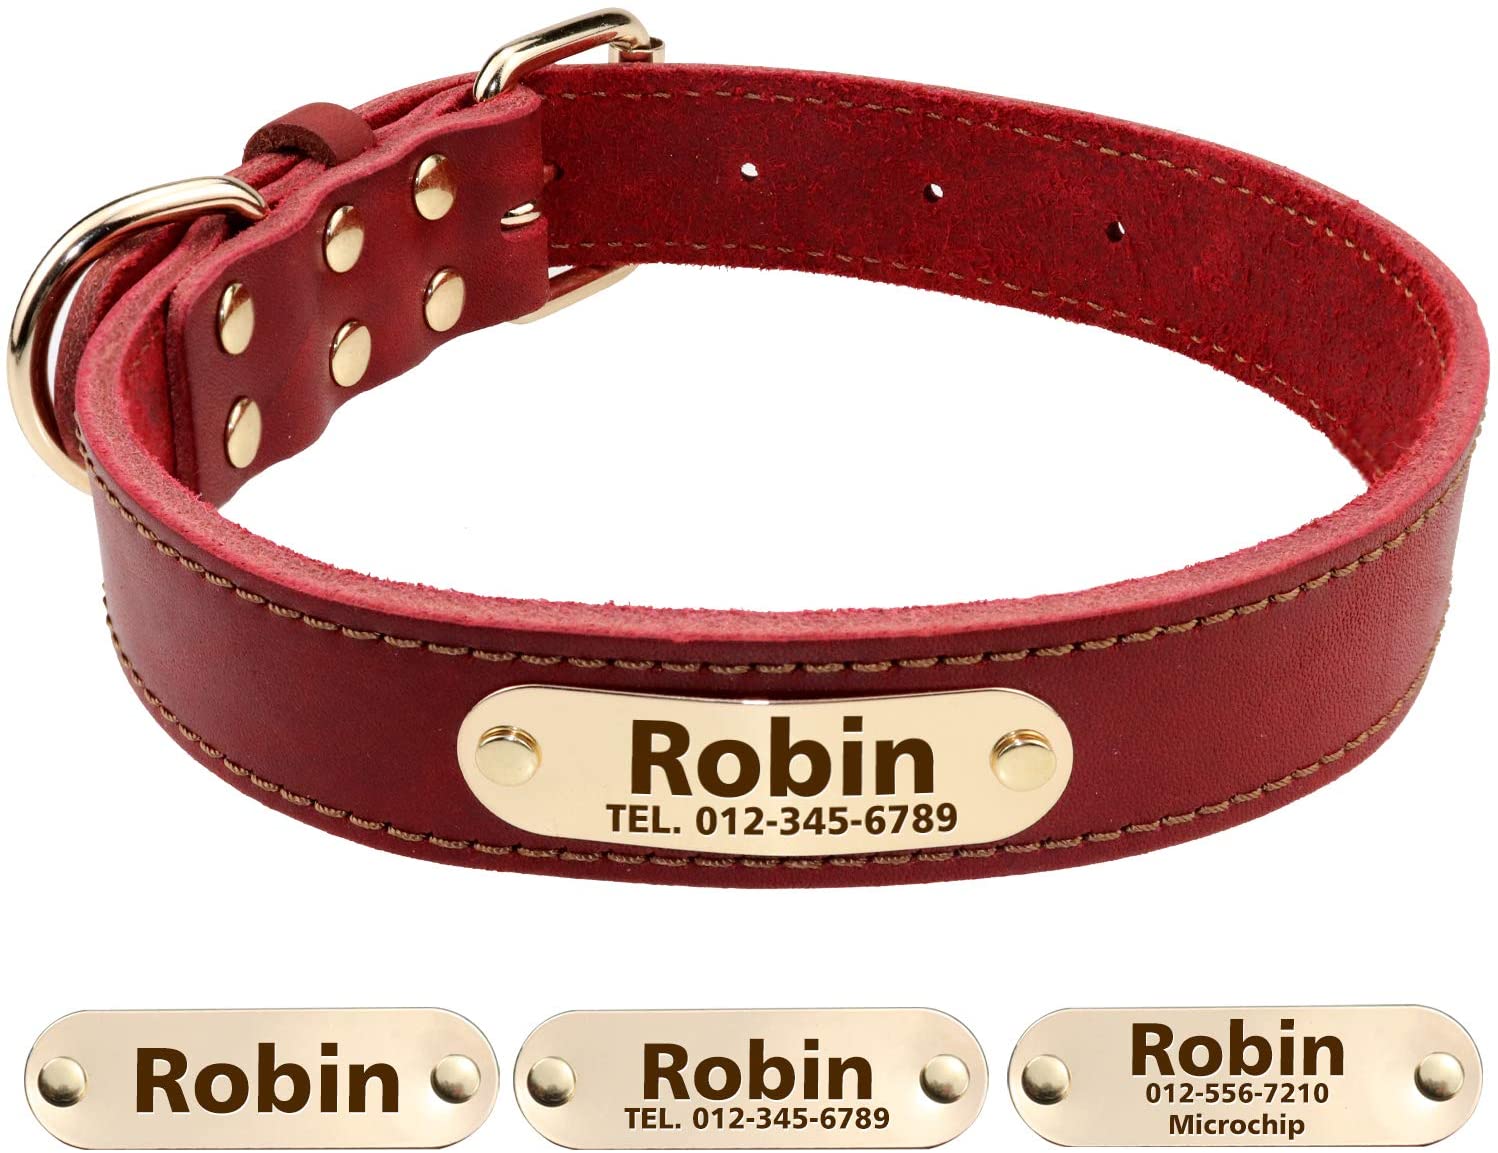  TagME Collar de Perro de Cuero Personalizado,Placa de Identificación Grabada con Nombre y número de Teléfono,Se Adapta a Perros Medianos,Rojo Coral 